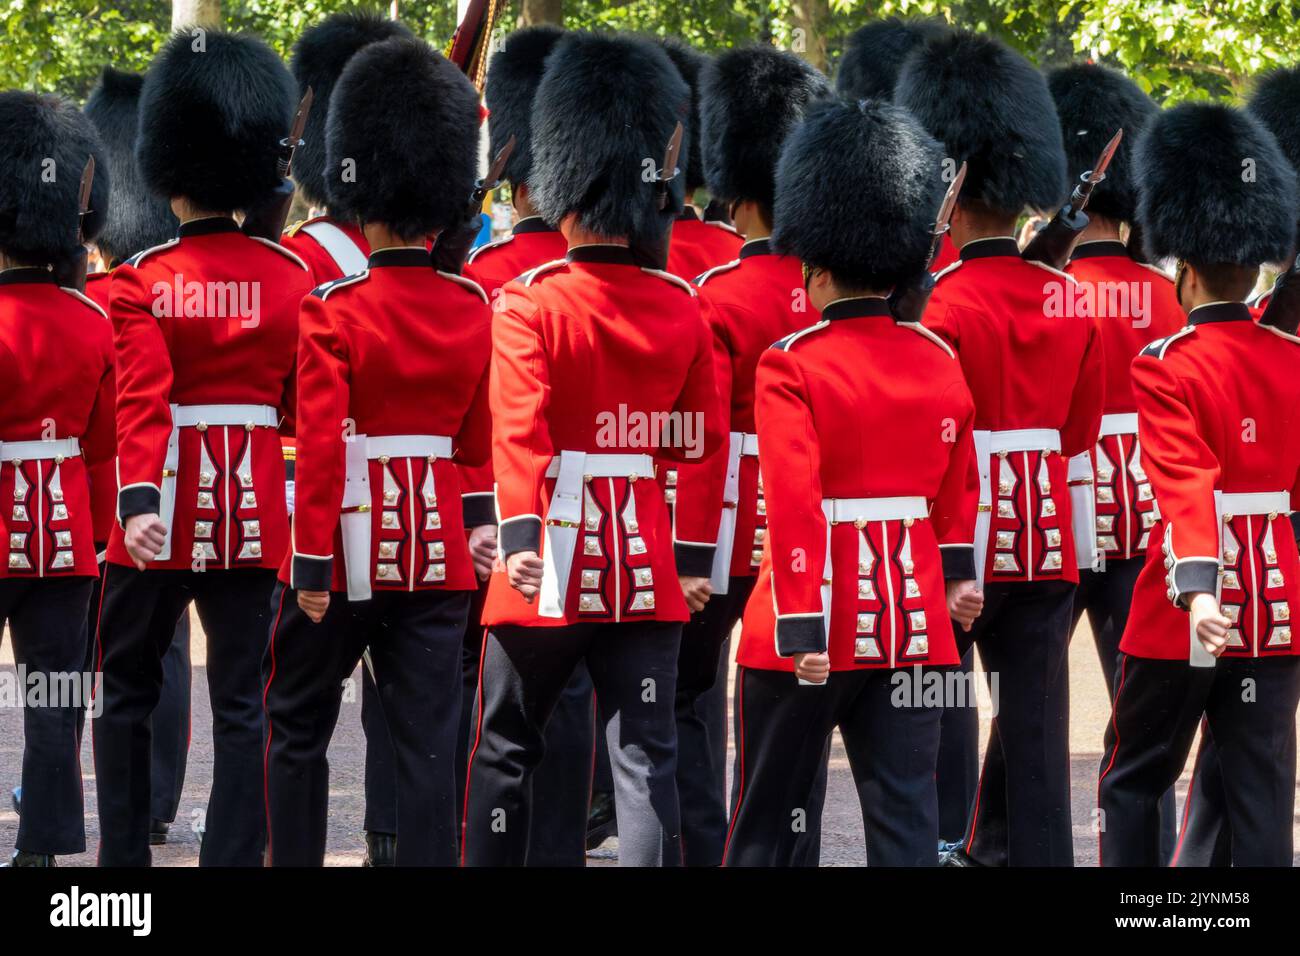 Reina real guardia británica en uniformes rojos durante el desfile de cambio de guardia en el Mall en Londres Reino Unido Foto de stock